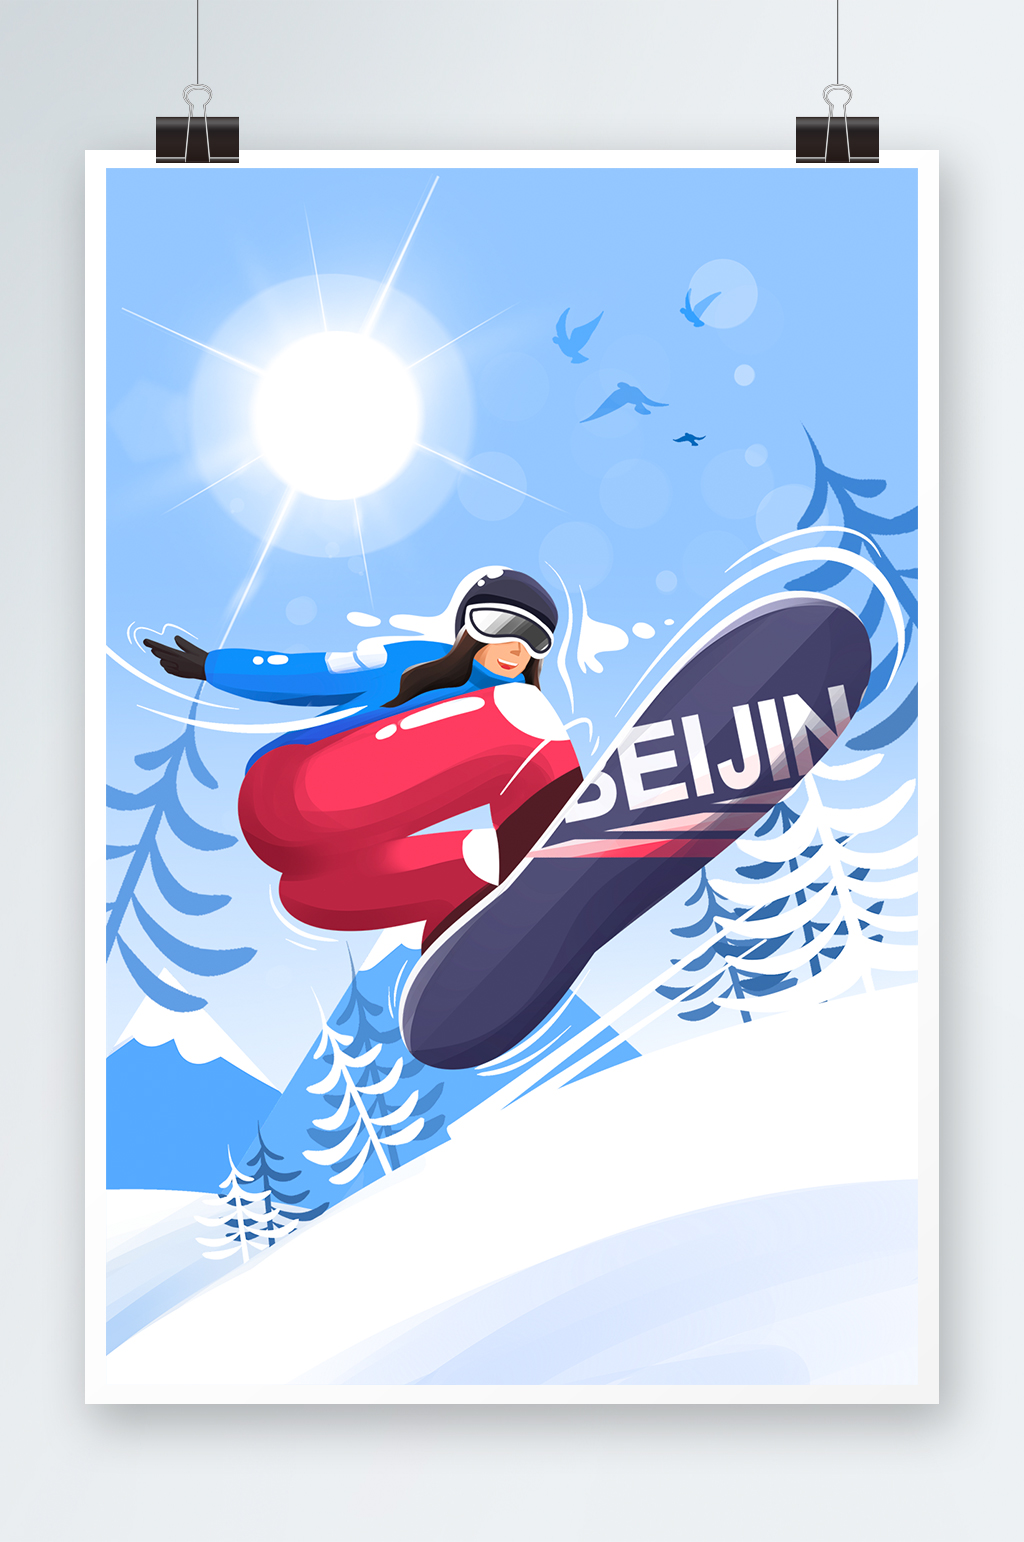 北京冬奥会单板滑雪项目扁平插画素材